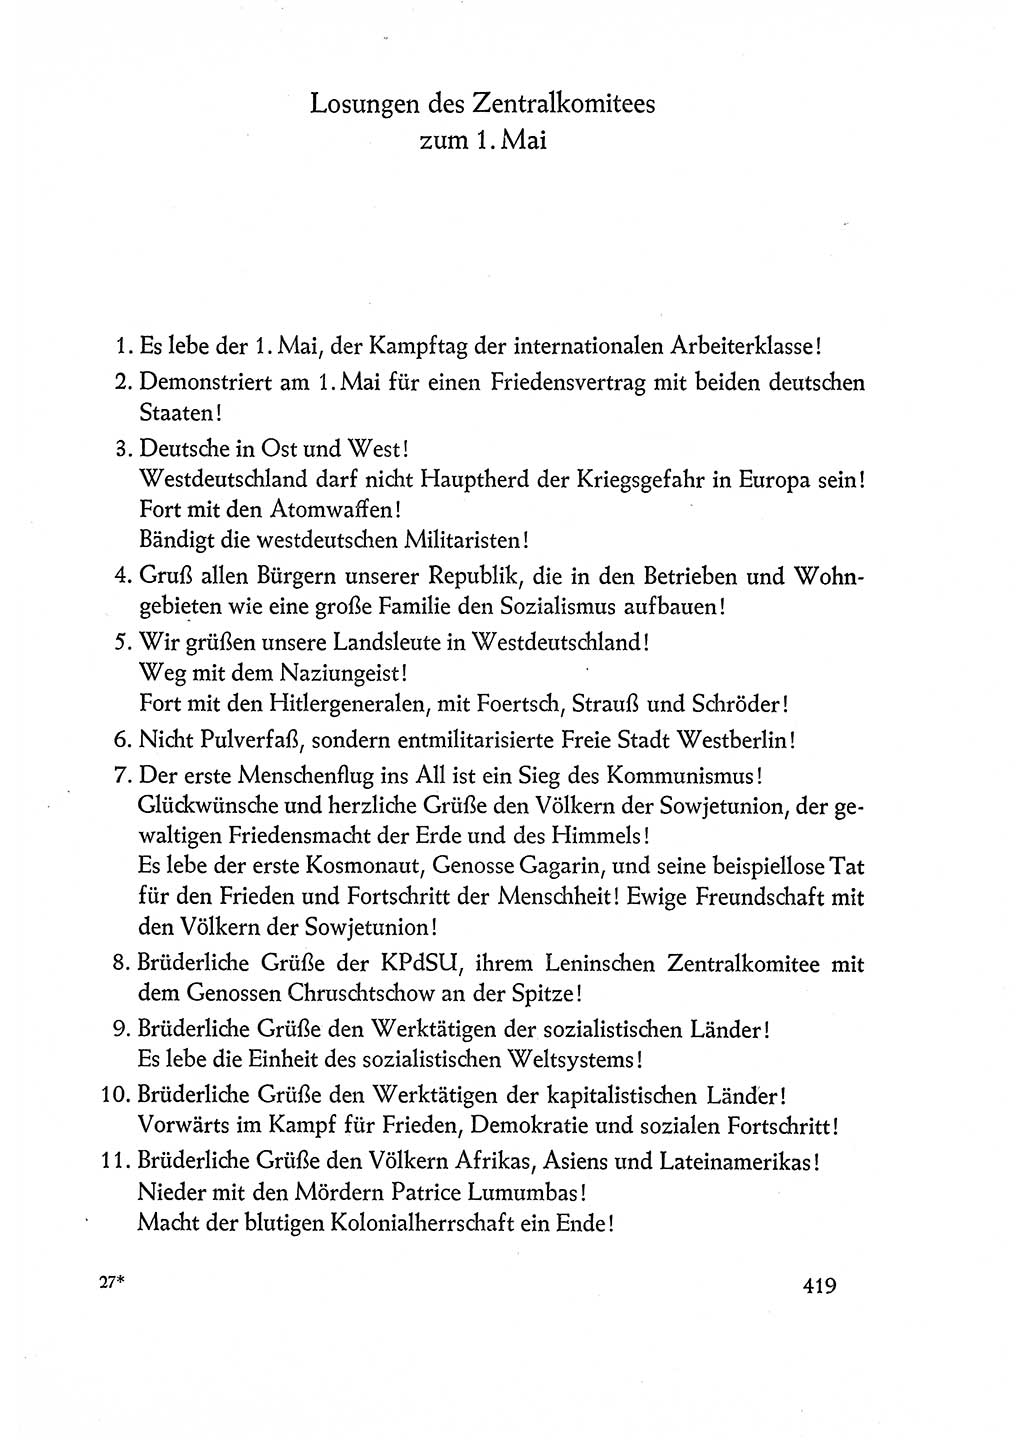 Dokumente der Sozialistischen Einheitspartei Deutschlands (SED) [Deutsche Demokratische Republik (DDR)] 1960-1961, Seite 419 (Dok. SED DDR 1960-1961, S. 419)